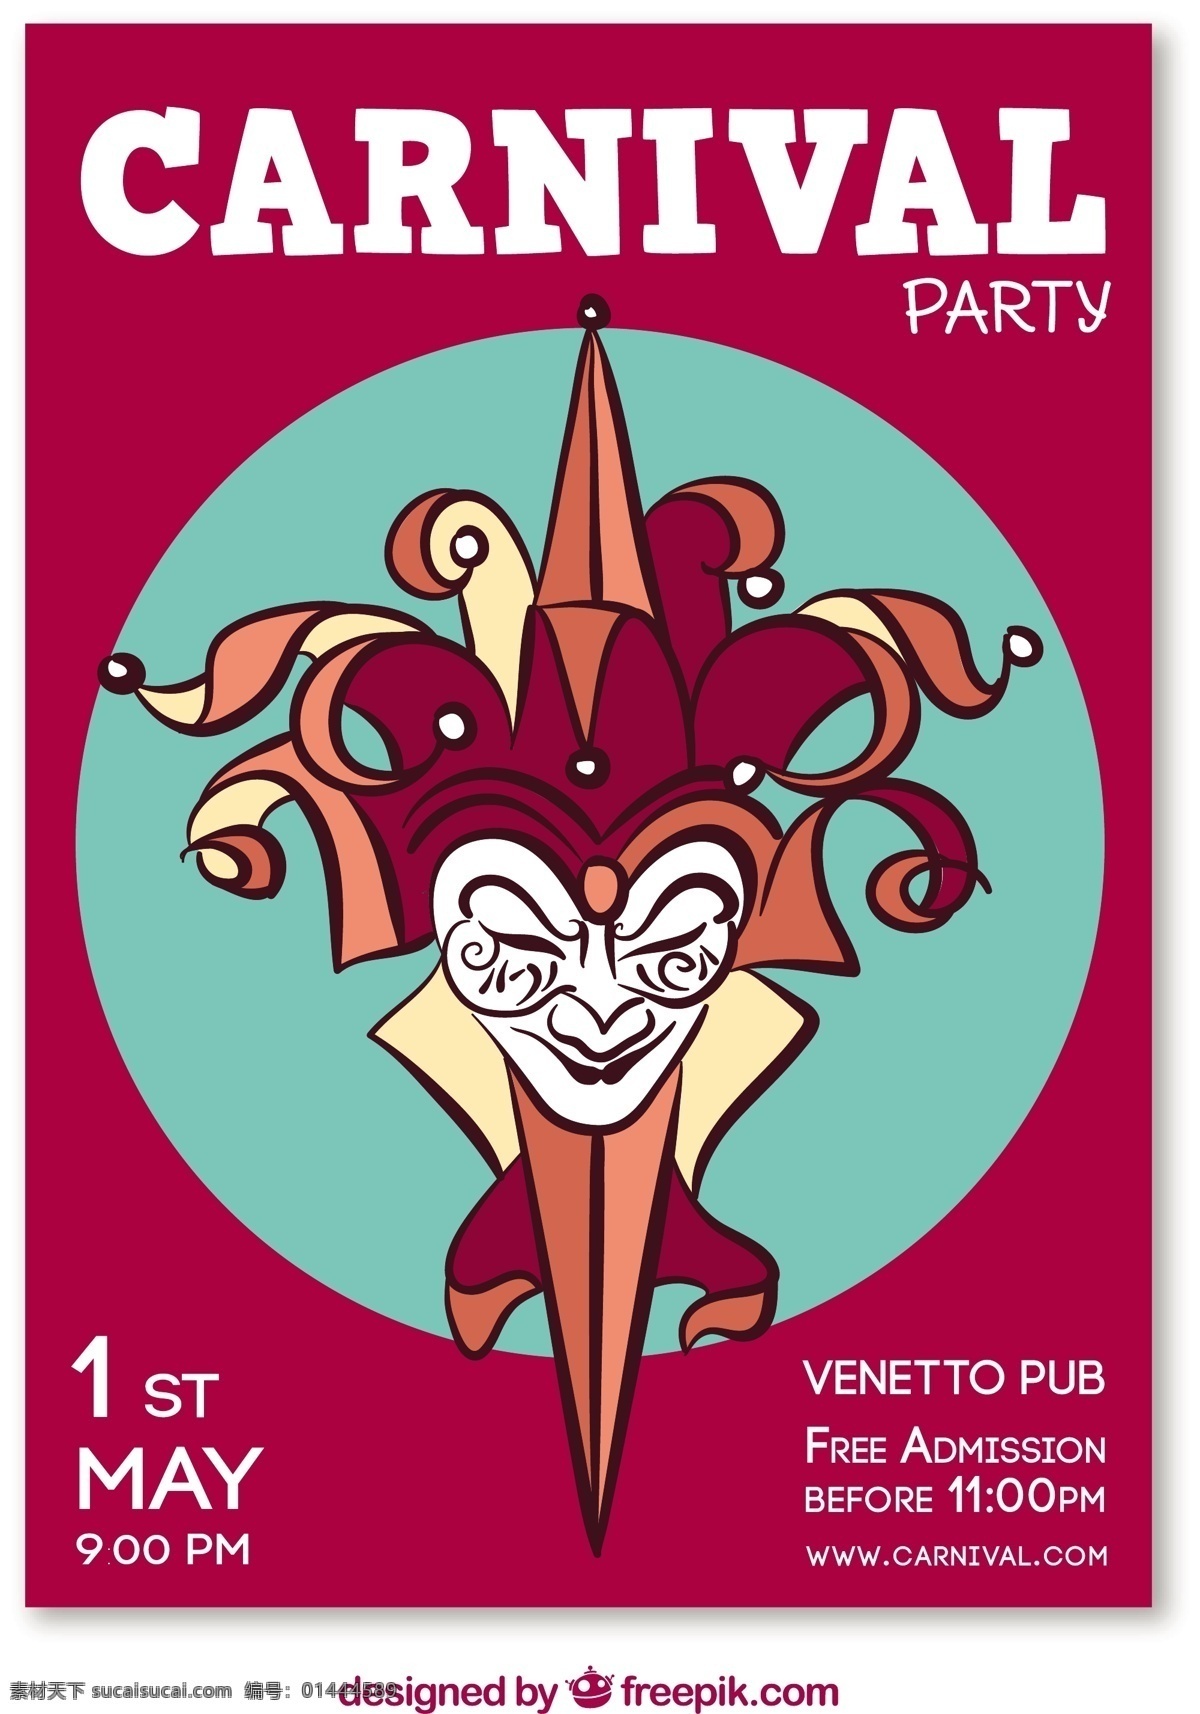 小丑 狂欢节 海报 聚会 庆典 事件 假日 面具 巴西 娱乐 化妆舞会 服装 神秘 威尼斯人 伪装